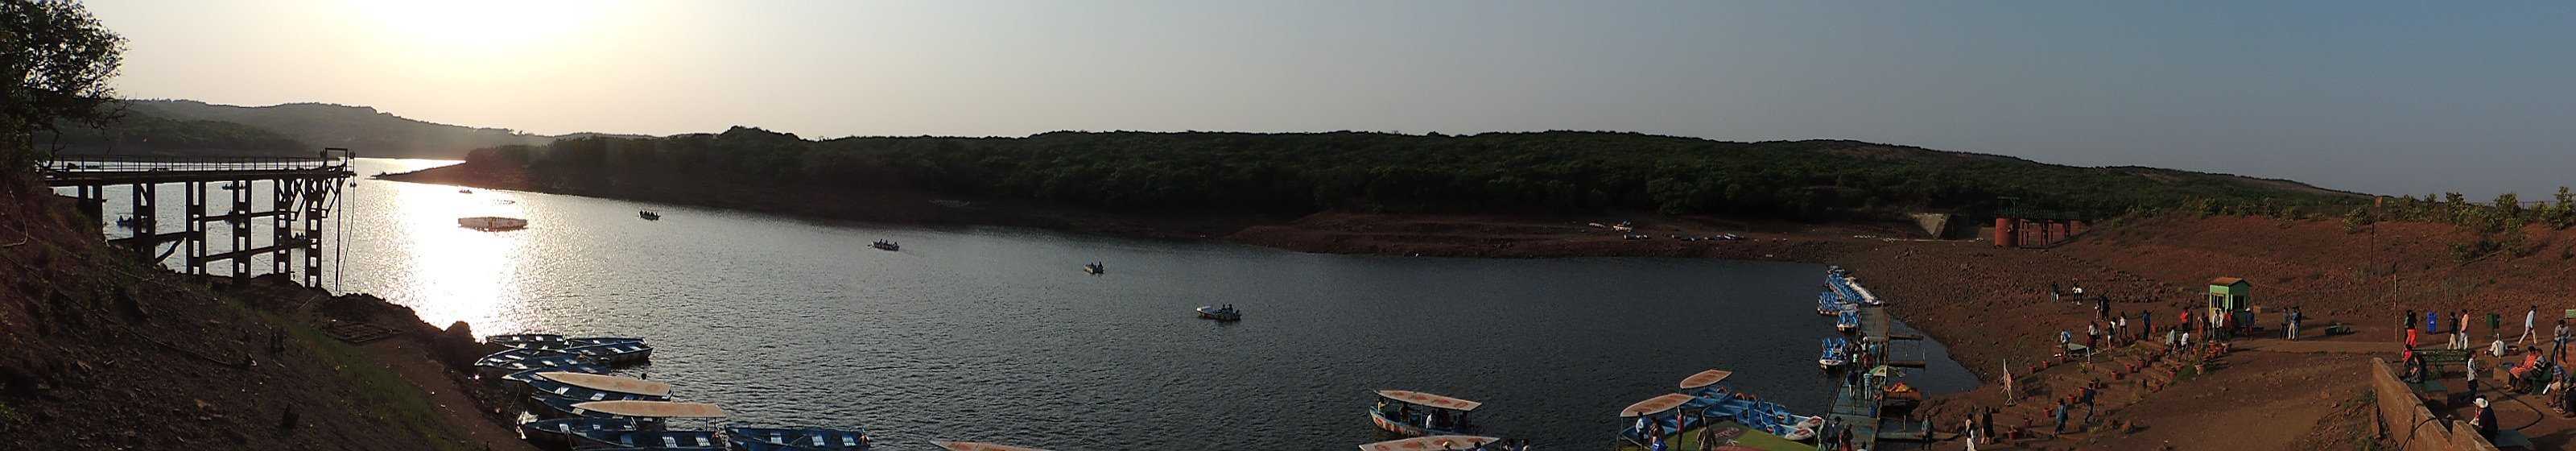 Venna Lake Mahabaleshwar Photo 3